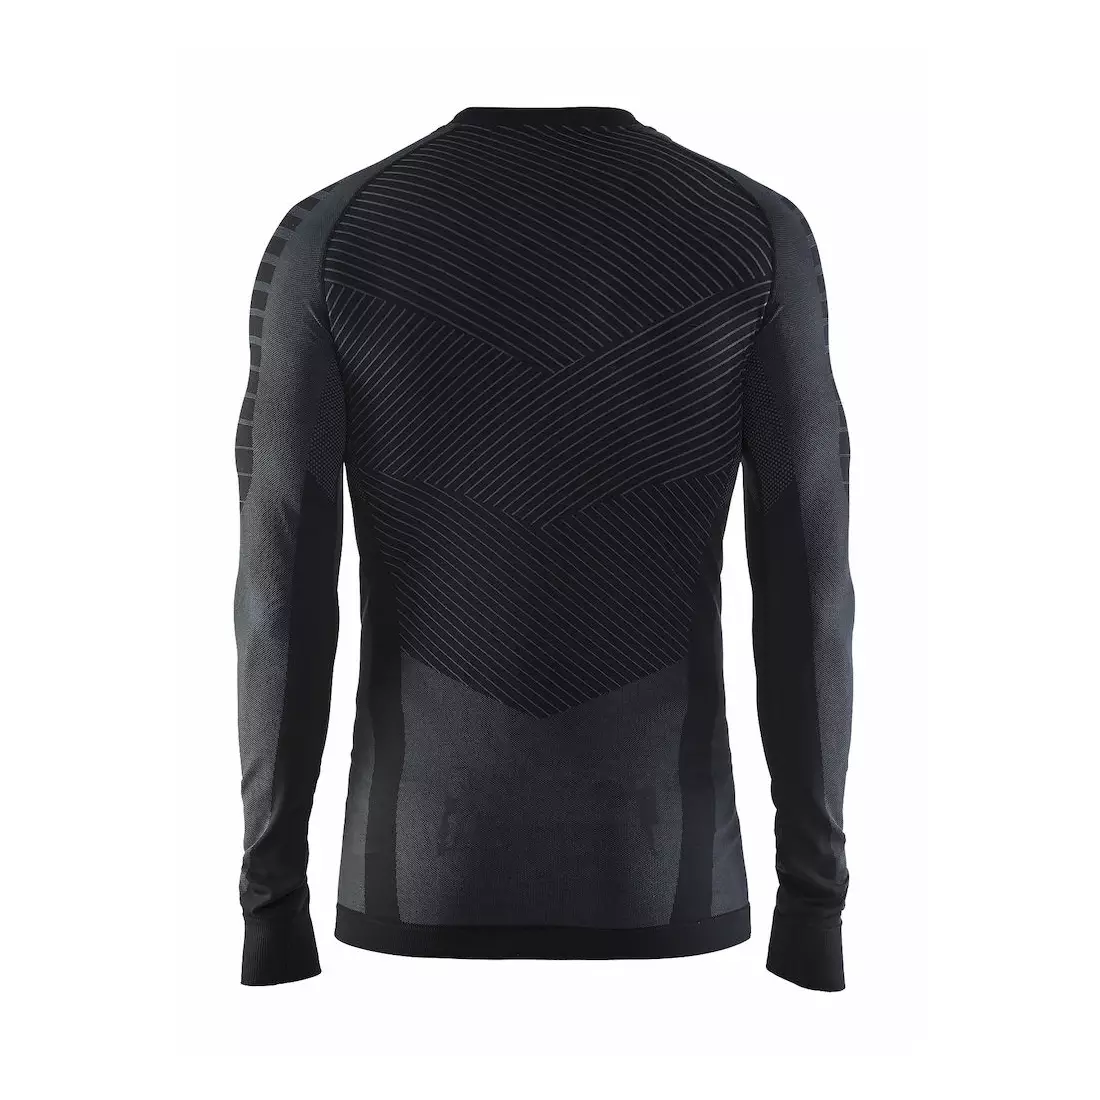 CRAFT ACTIVE INTENSITY - tricou bărbați, lenjerie termică cu mânecă lungă 1905337-999985